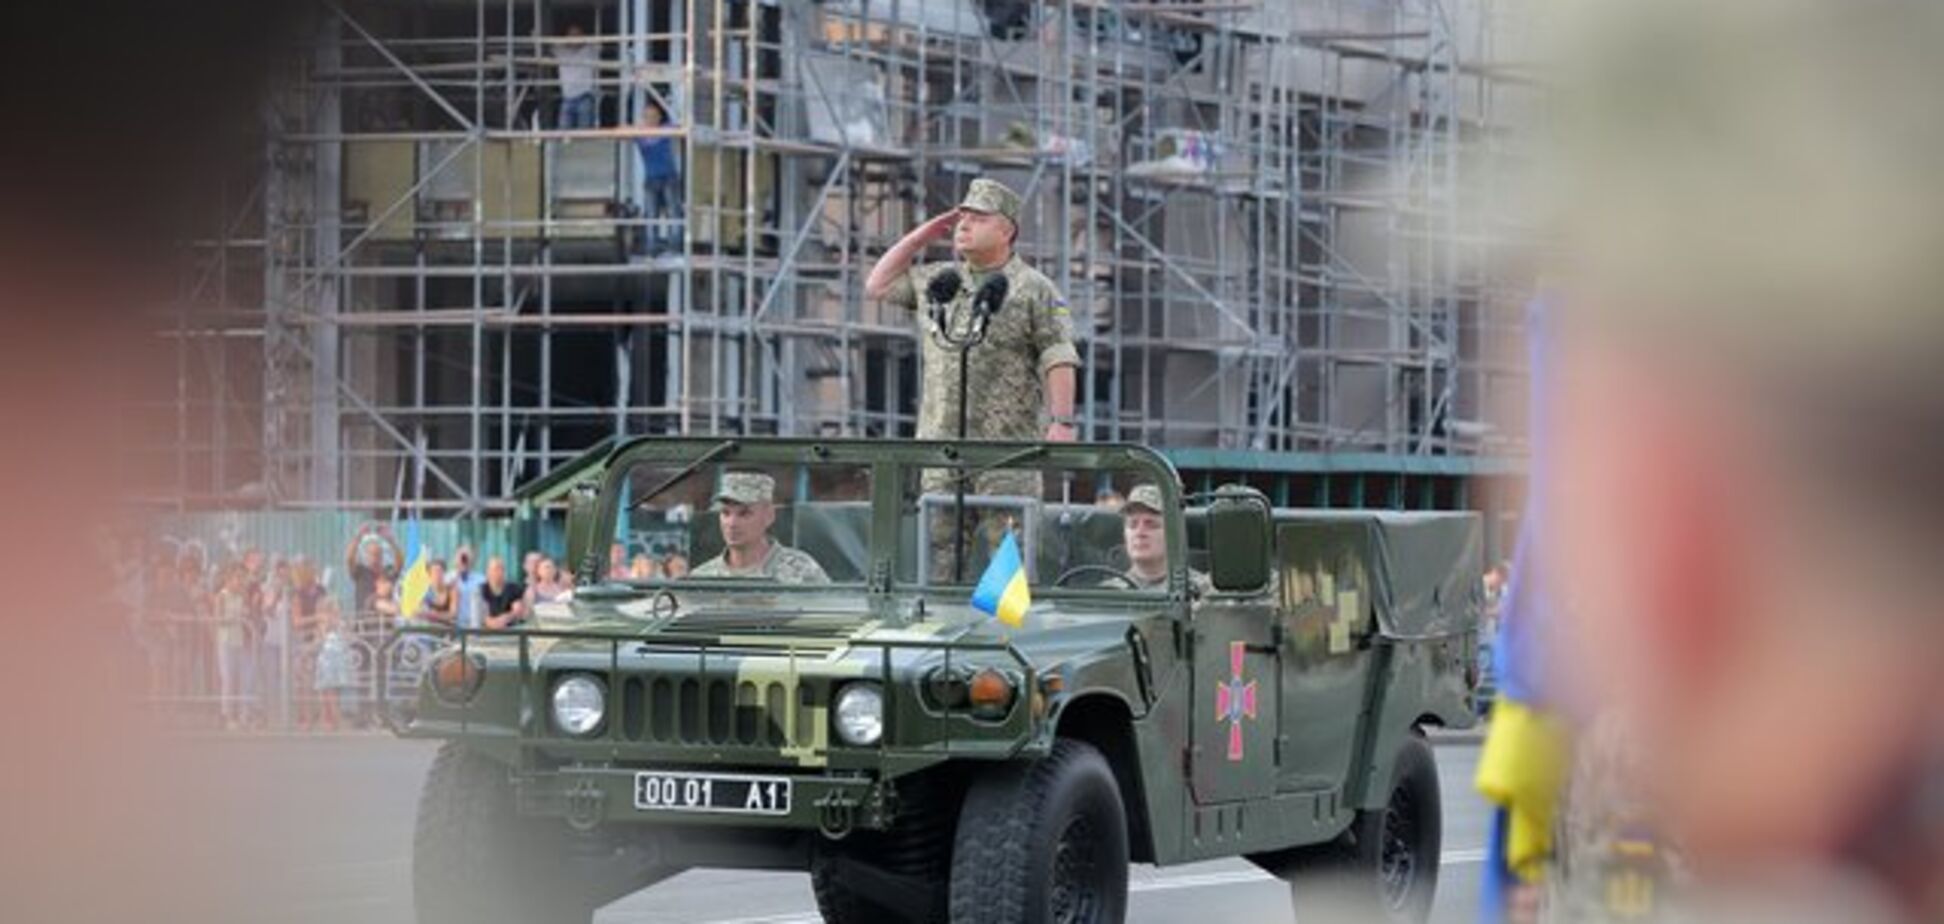 Парад в Киеве бесит тех, кому все равно, чья армия в их стране - своя или чужая